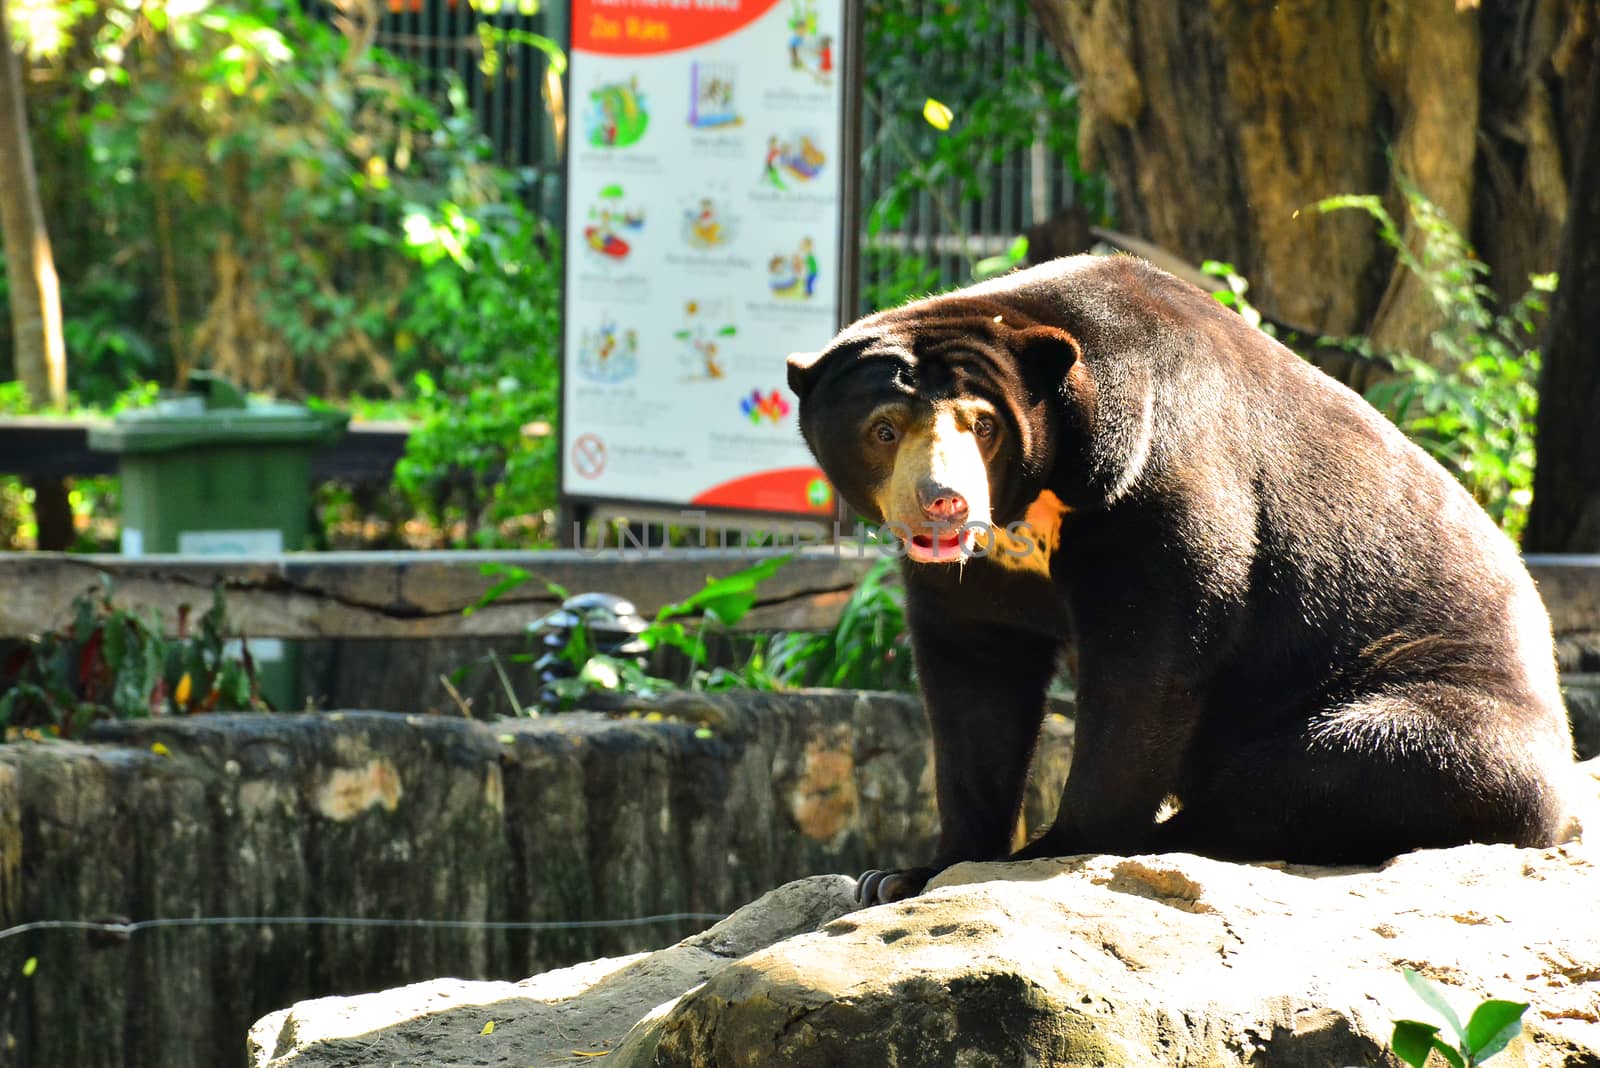 Malaysian sun bear at Dusit Zoo in Khao Din Park, Bangkok, Thail by imwaltersy